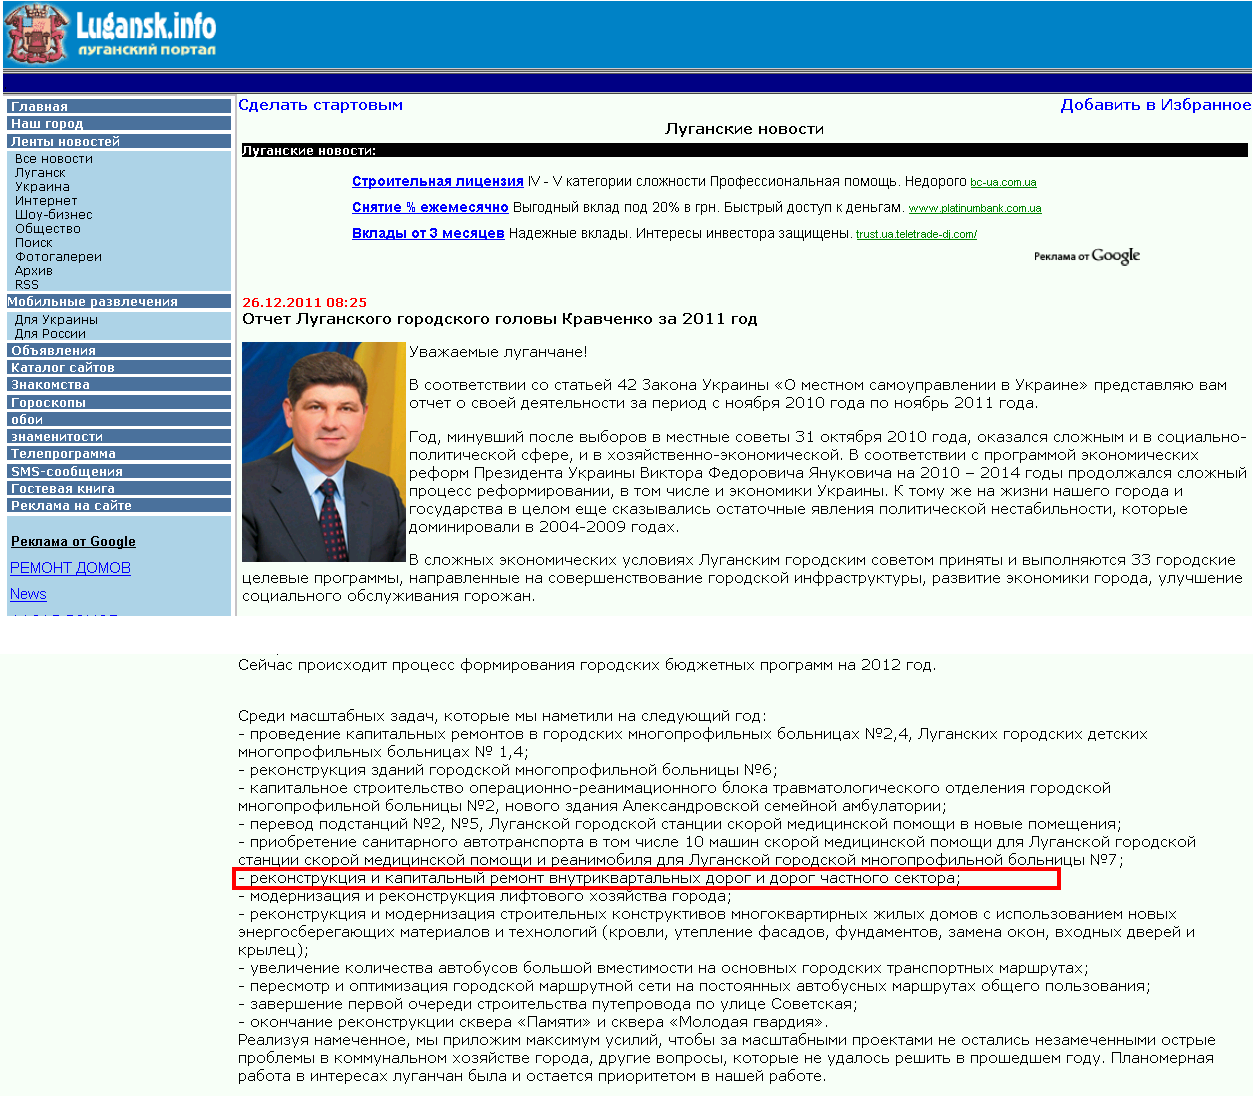 http://news.lugansk.info/2011/lugansk/12/003401.shtml